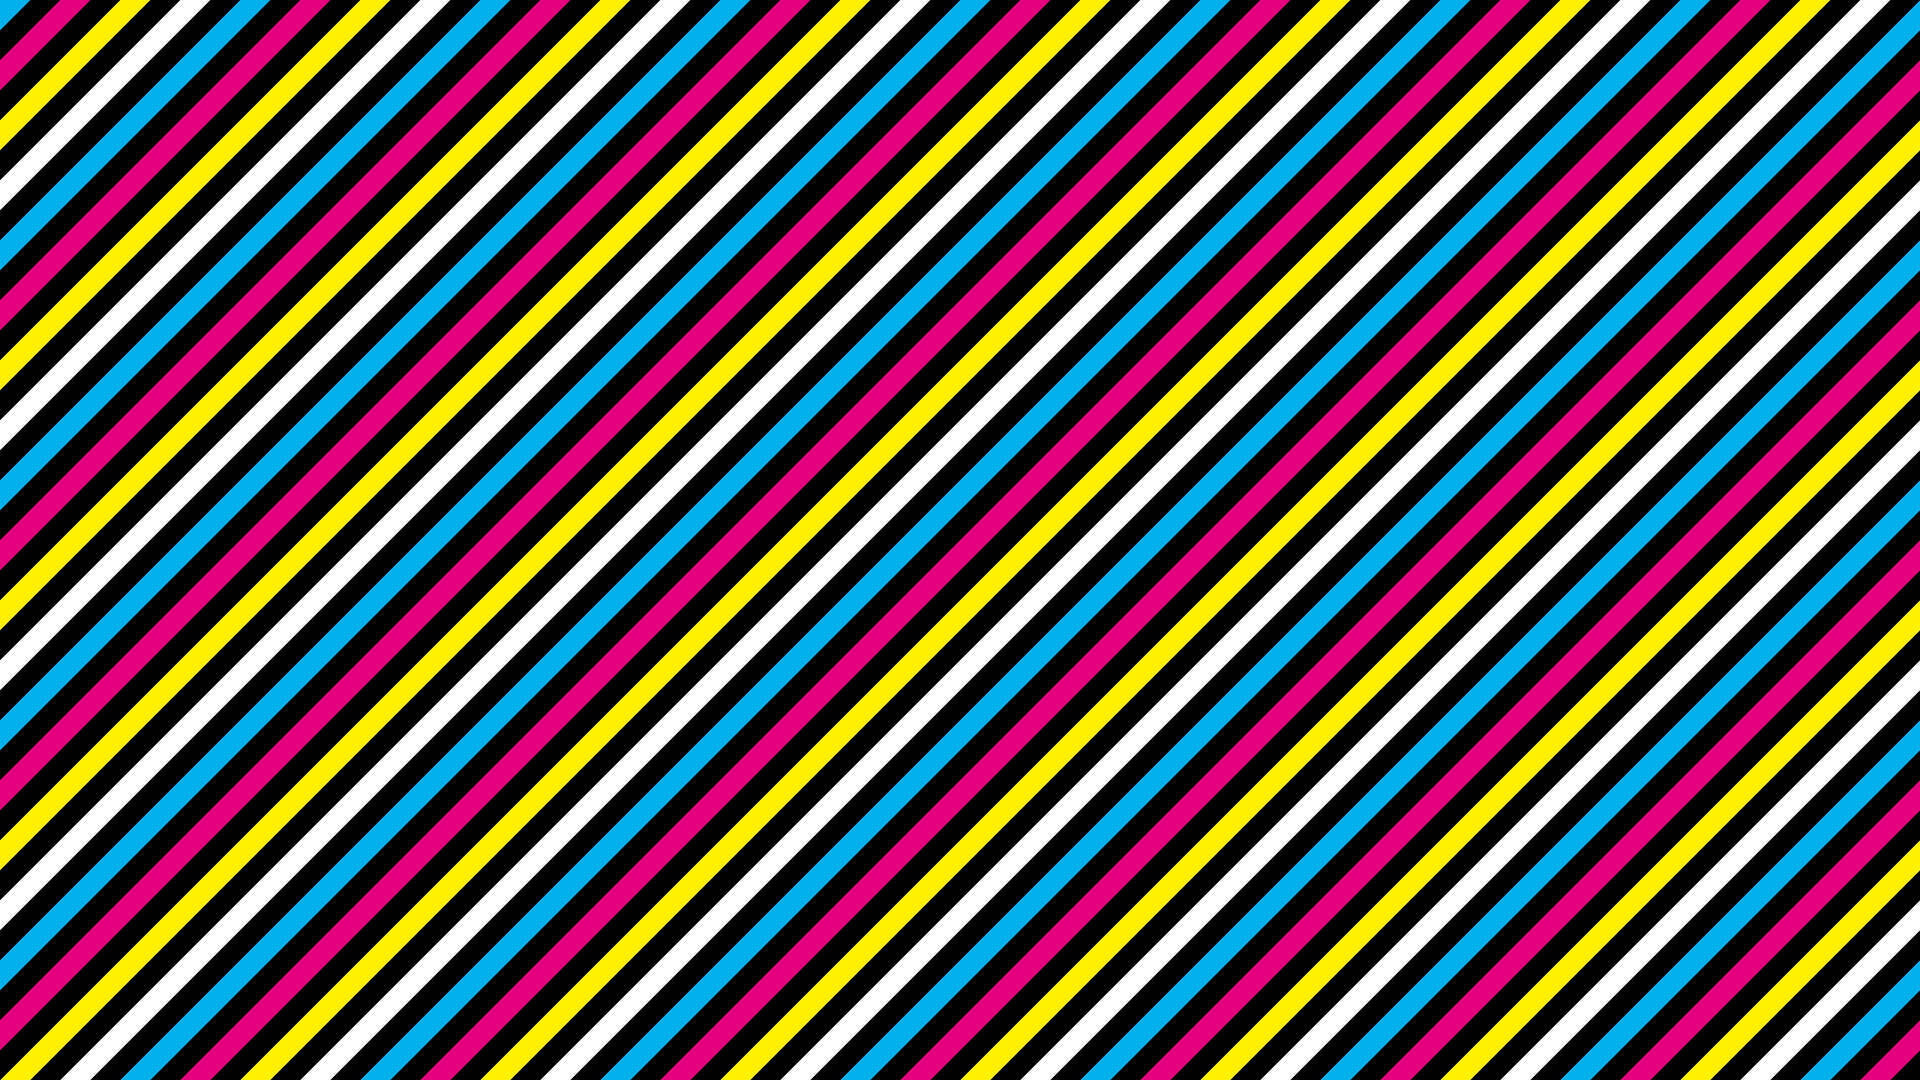 A colorful diagonal stripes 80s wallpaper.